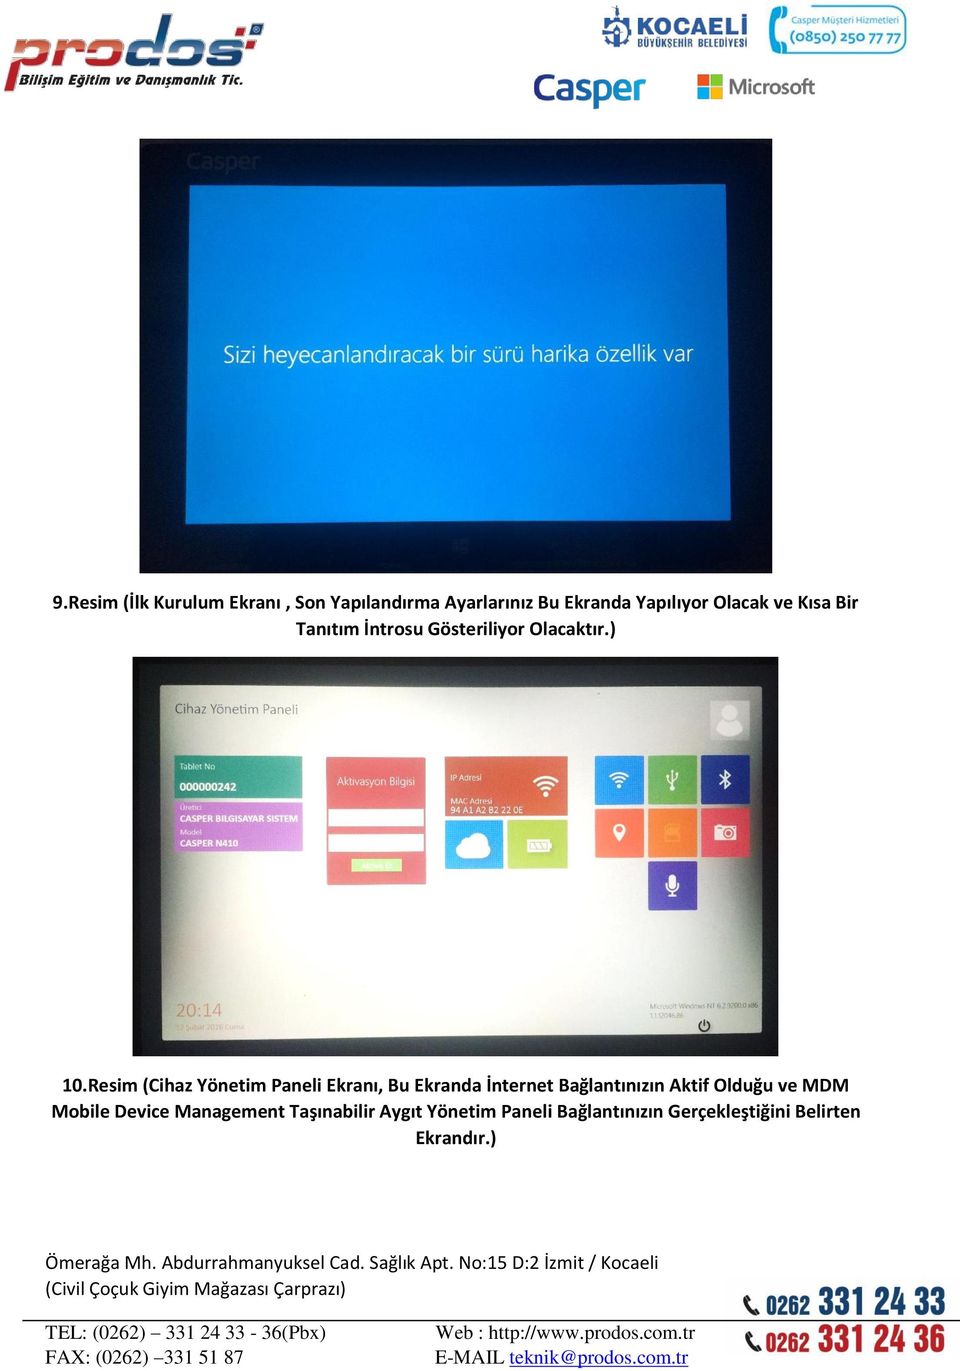 Resim (Cihaz Yönetim Paneli Ekranı, Bu Ekranda İnternet Bağlantınızın Aktif Olduğu